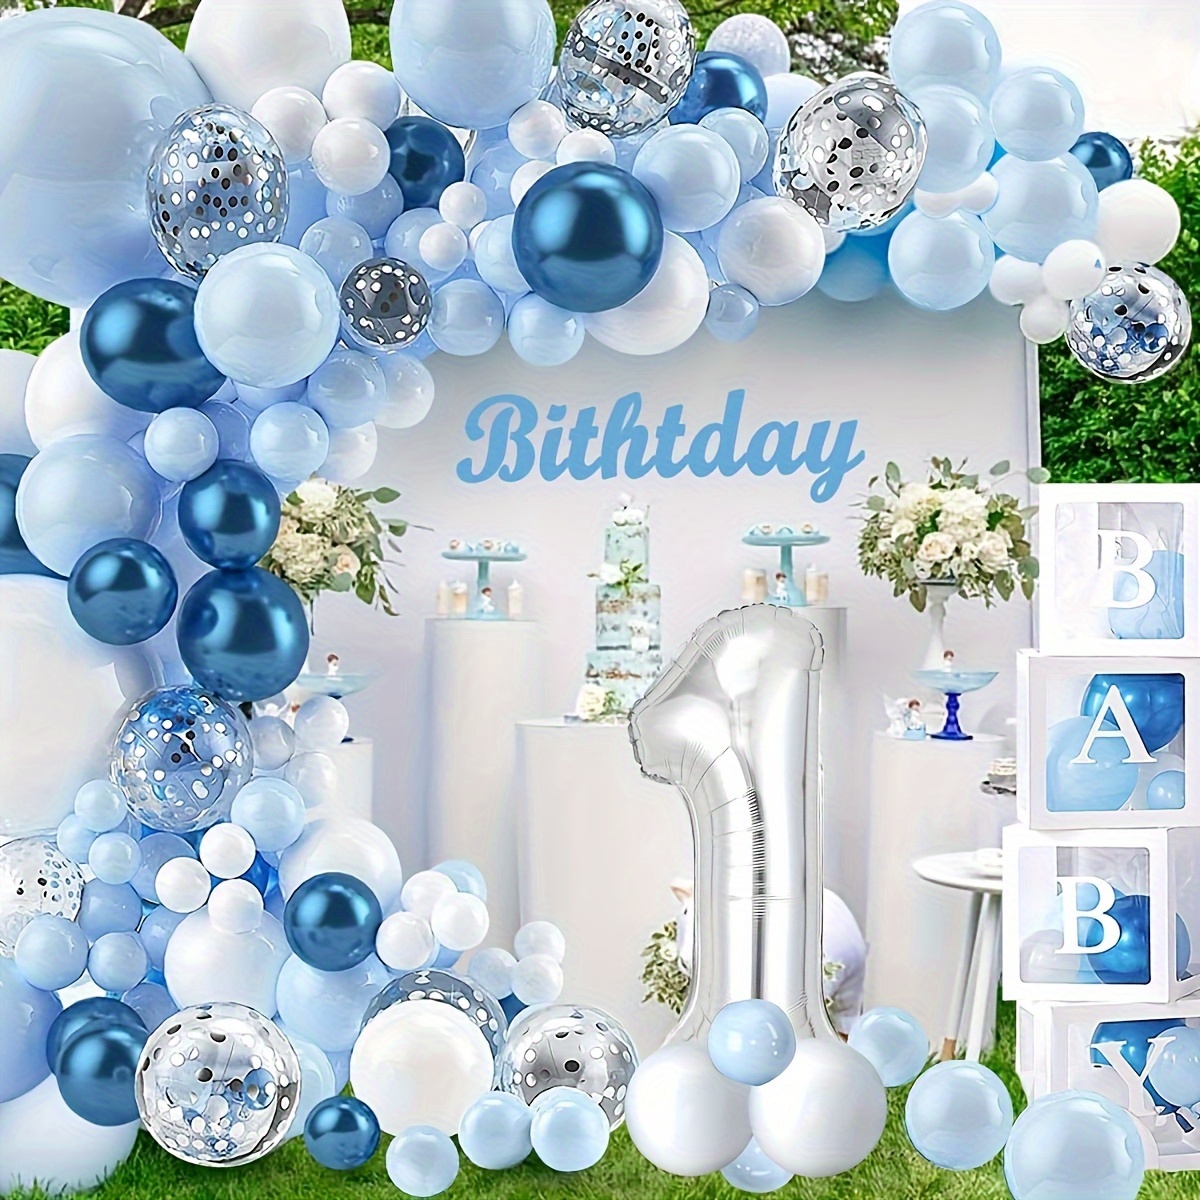  PartyWoo Globos azules y blancos, 70 globos azul cielo